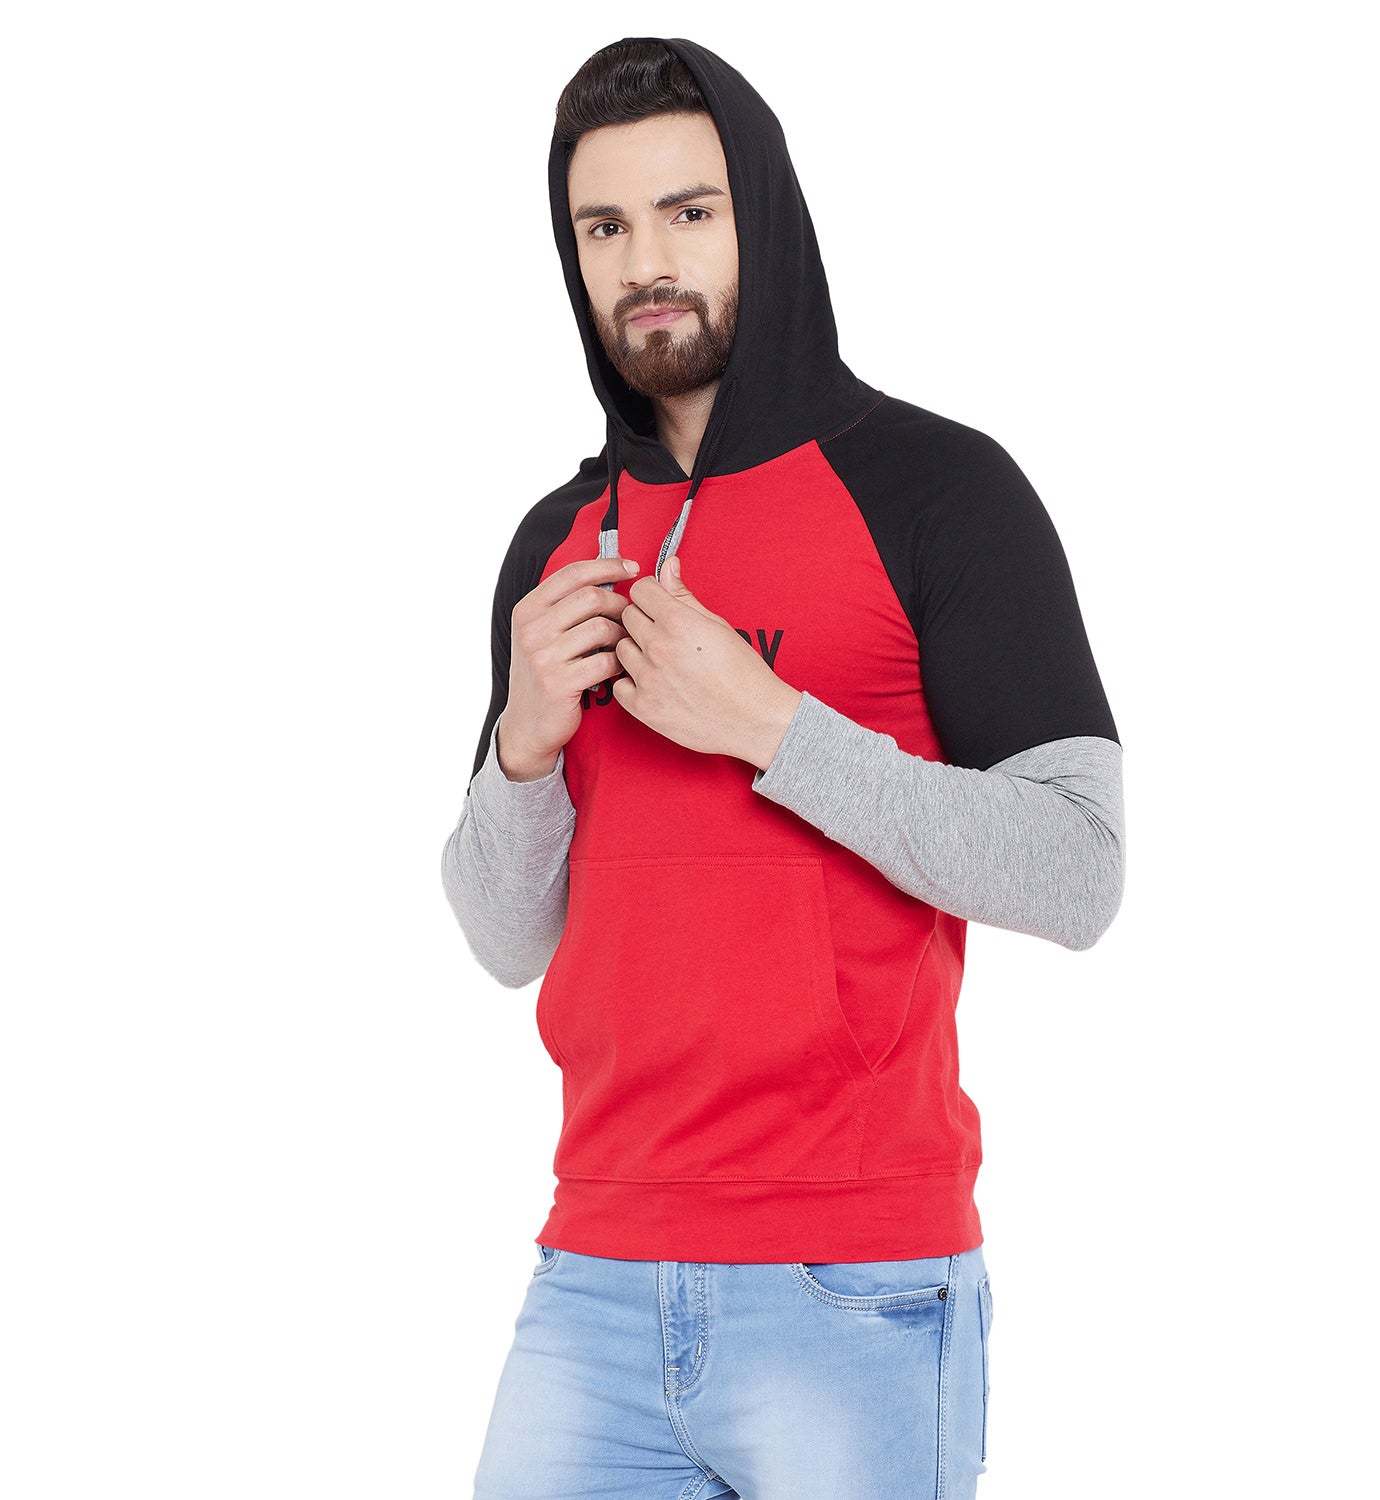 Red/Black/Grey Melange Printed Hooded Full Sleeves T-Shirt